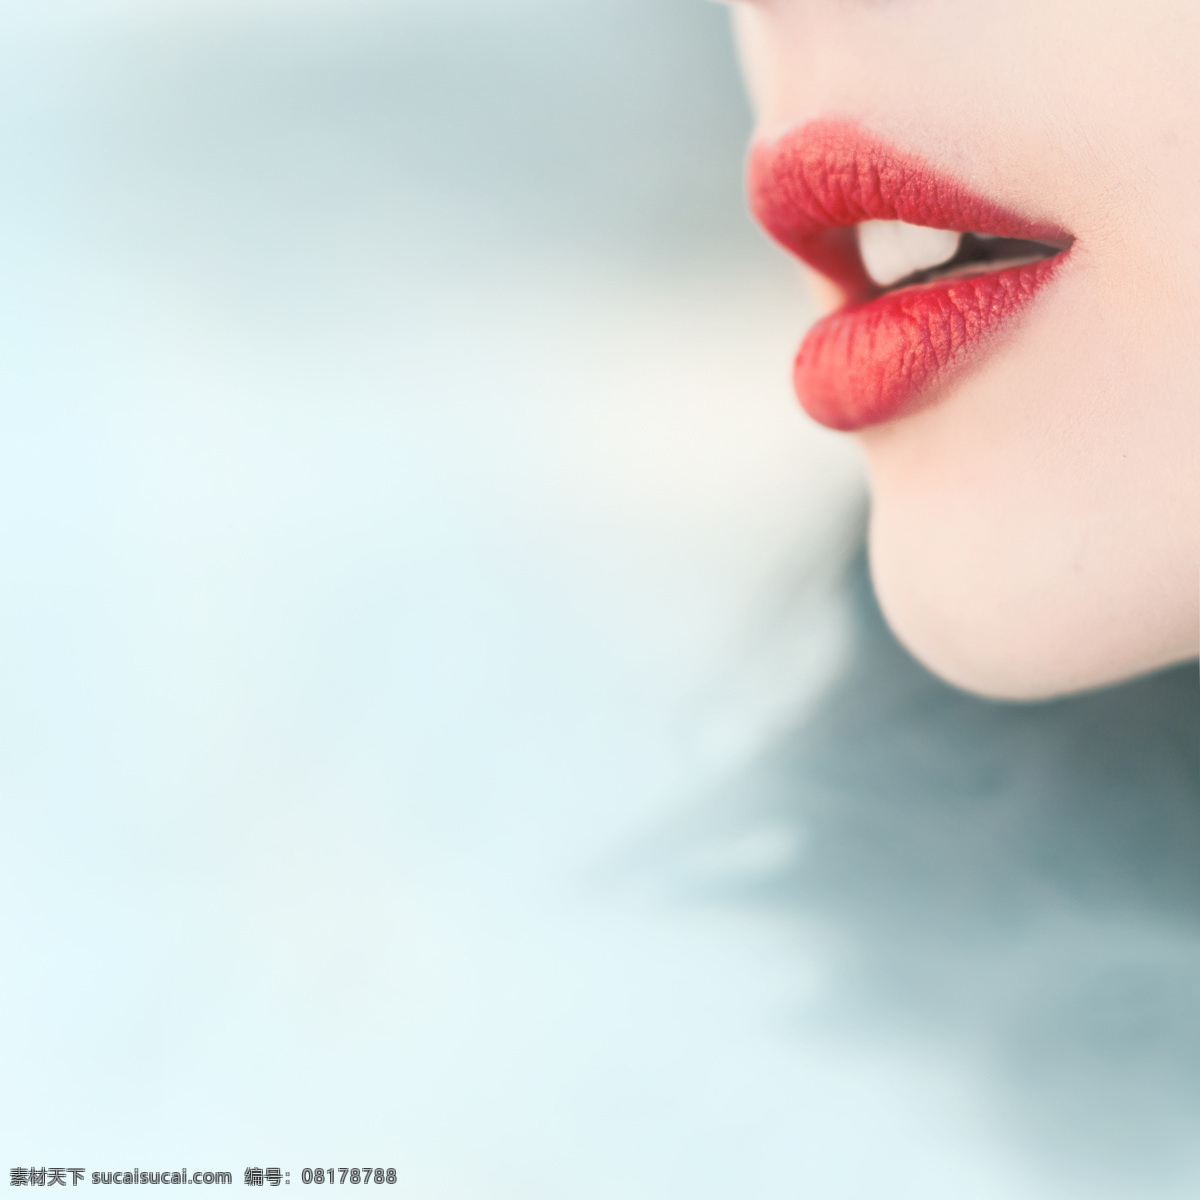 红色 嘴唇 图 时尚美女 性感美女 美女模特 美女写真 外国女性 嘴唇图片 生活人物 人物图片